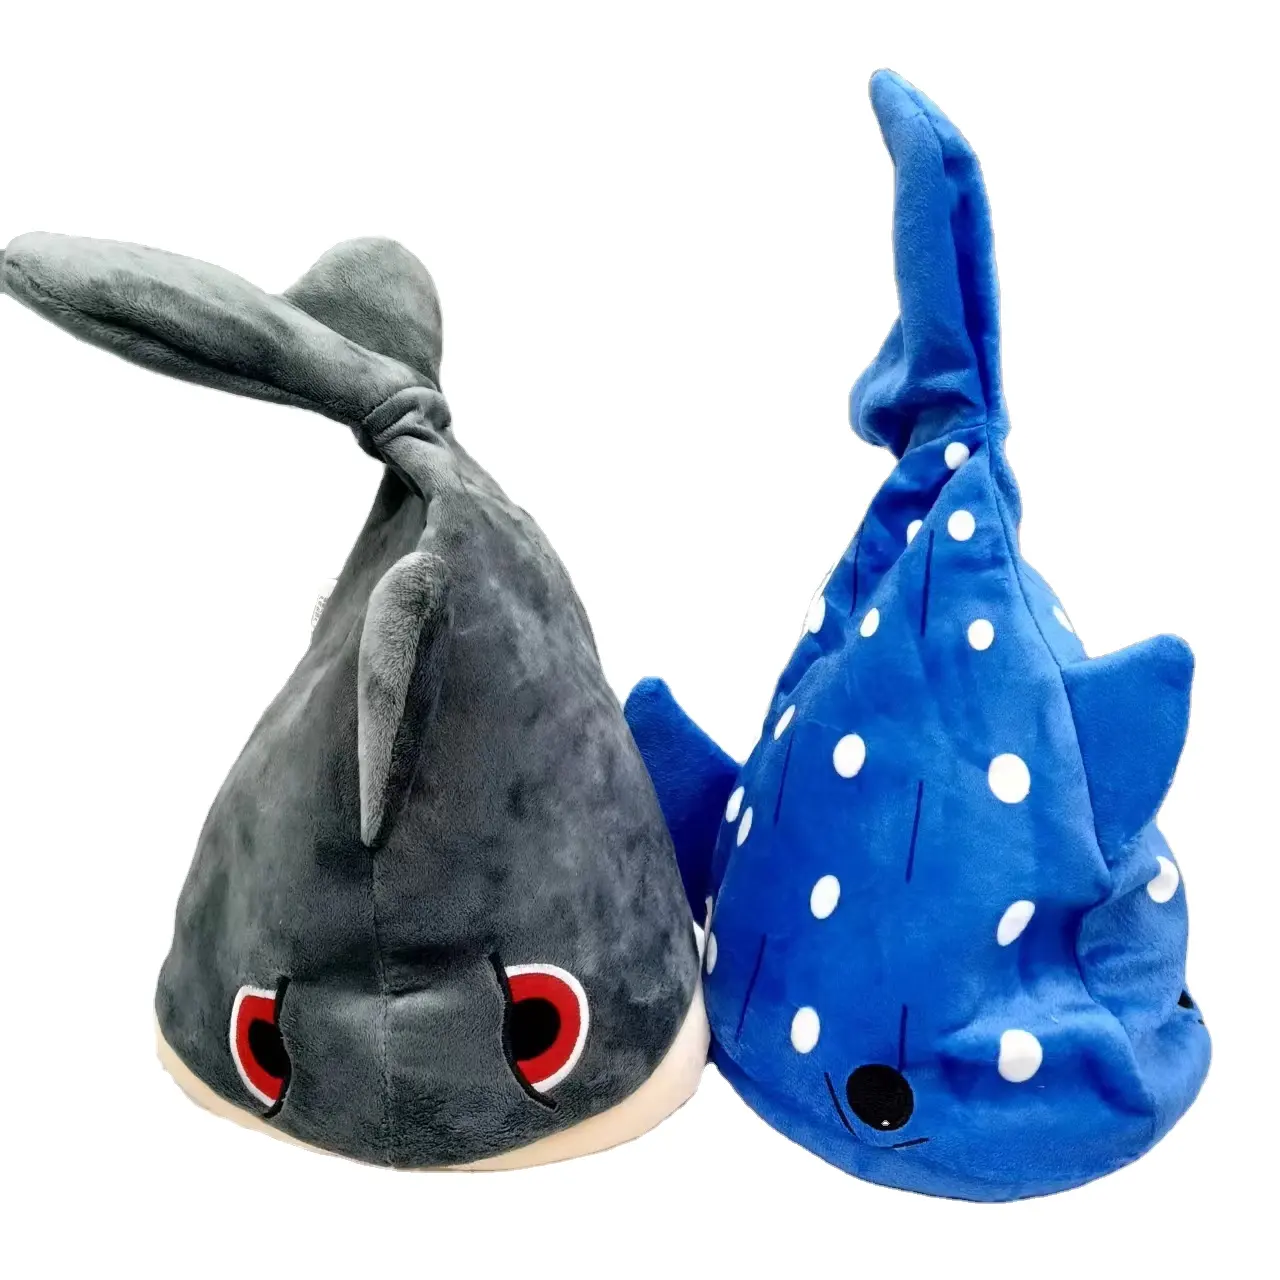 Vente chaude dinde jambes jouets de noël requins électrique secouant chantant chapeaux jouets en peluche drôle peluche chapeau